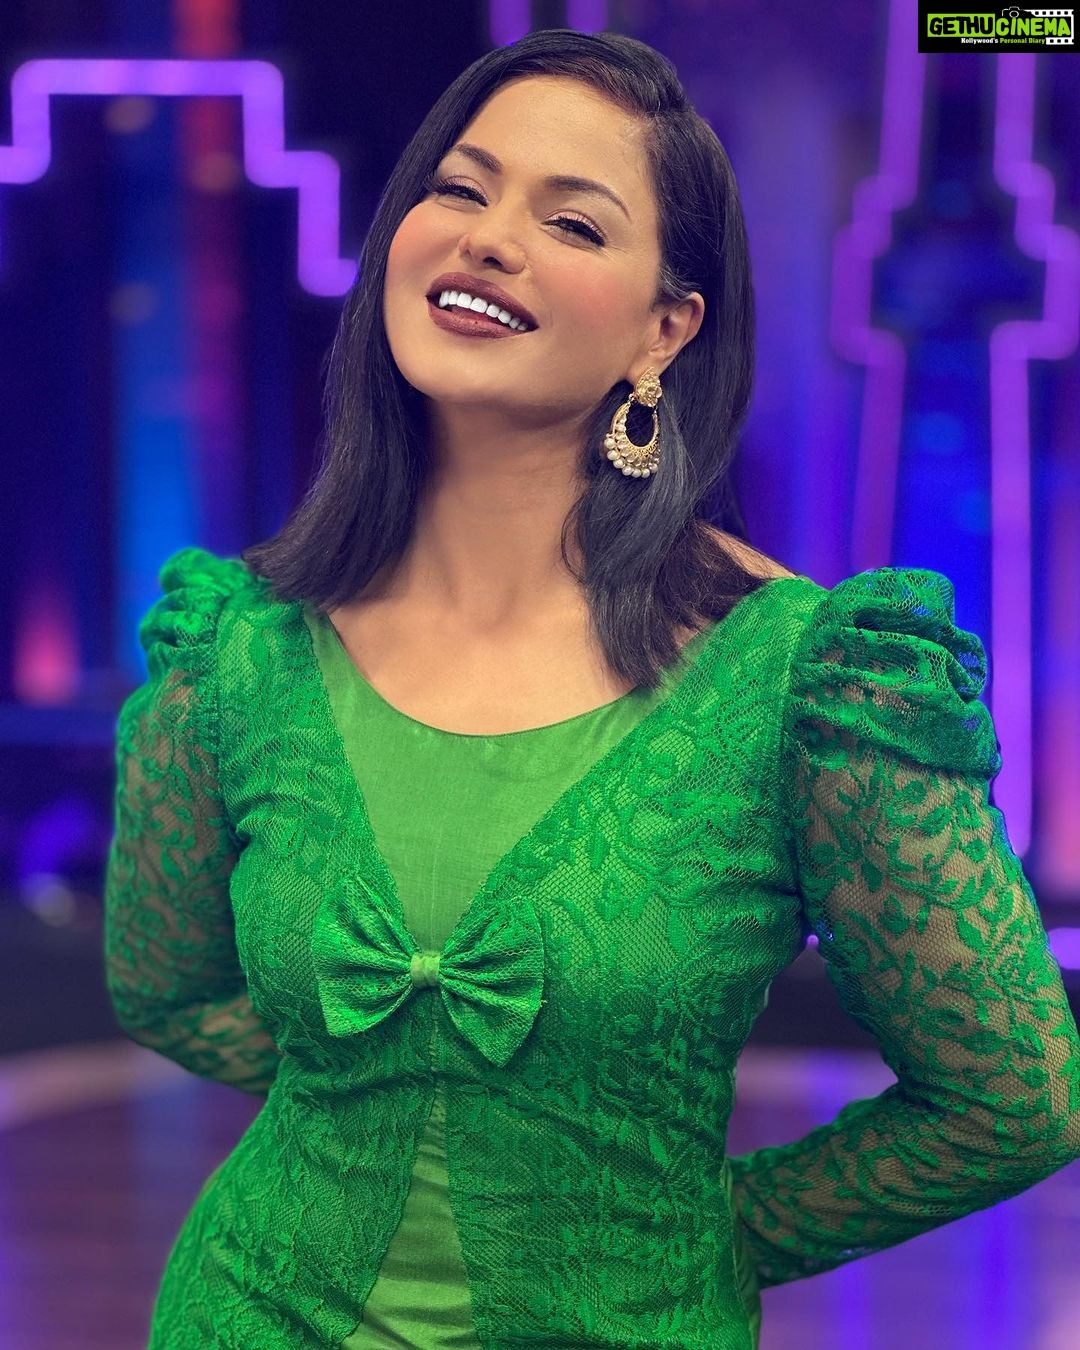 Veena Malik - 5K Likes - Most Liked Instagram Photos